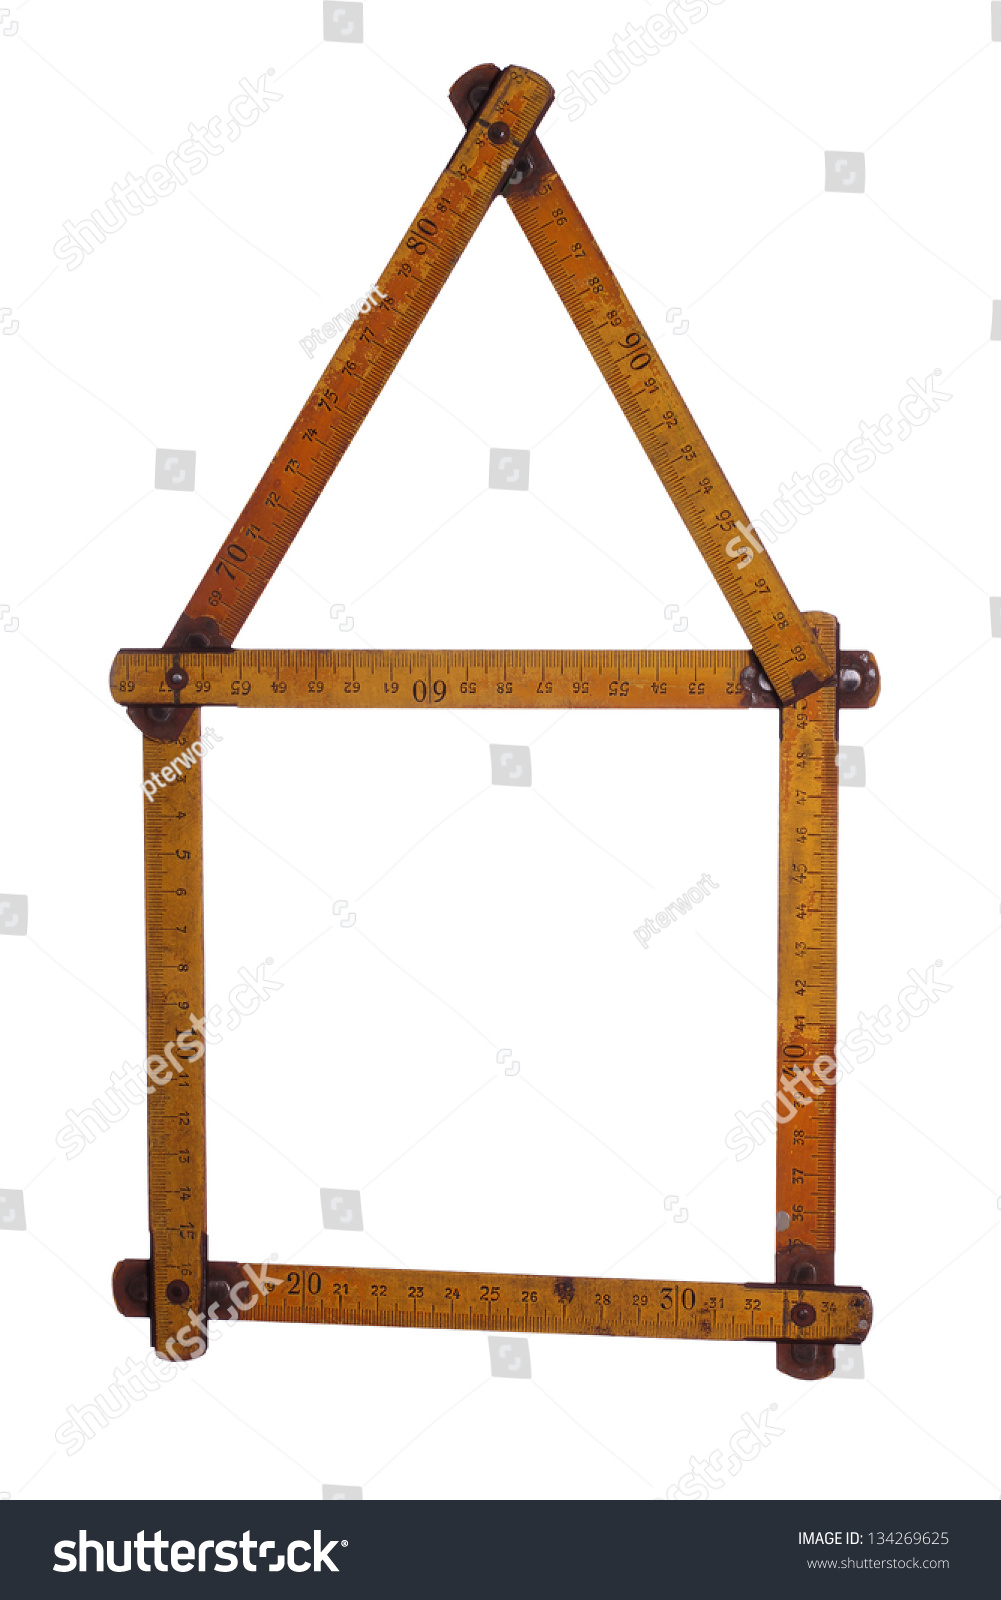 symbol of house made of old yardstick #134269625